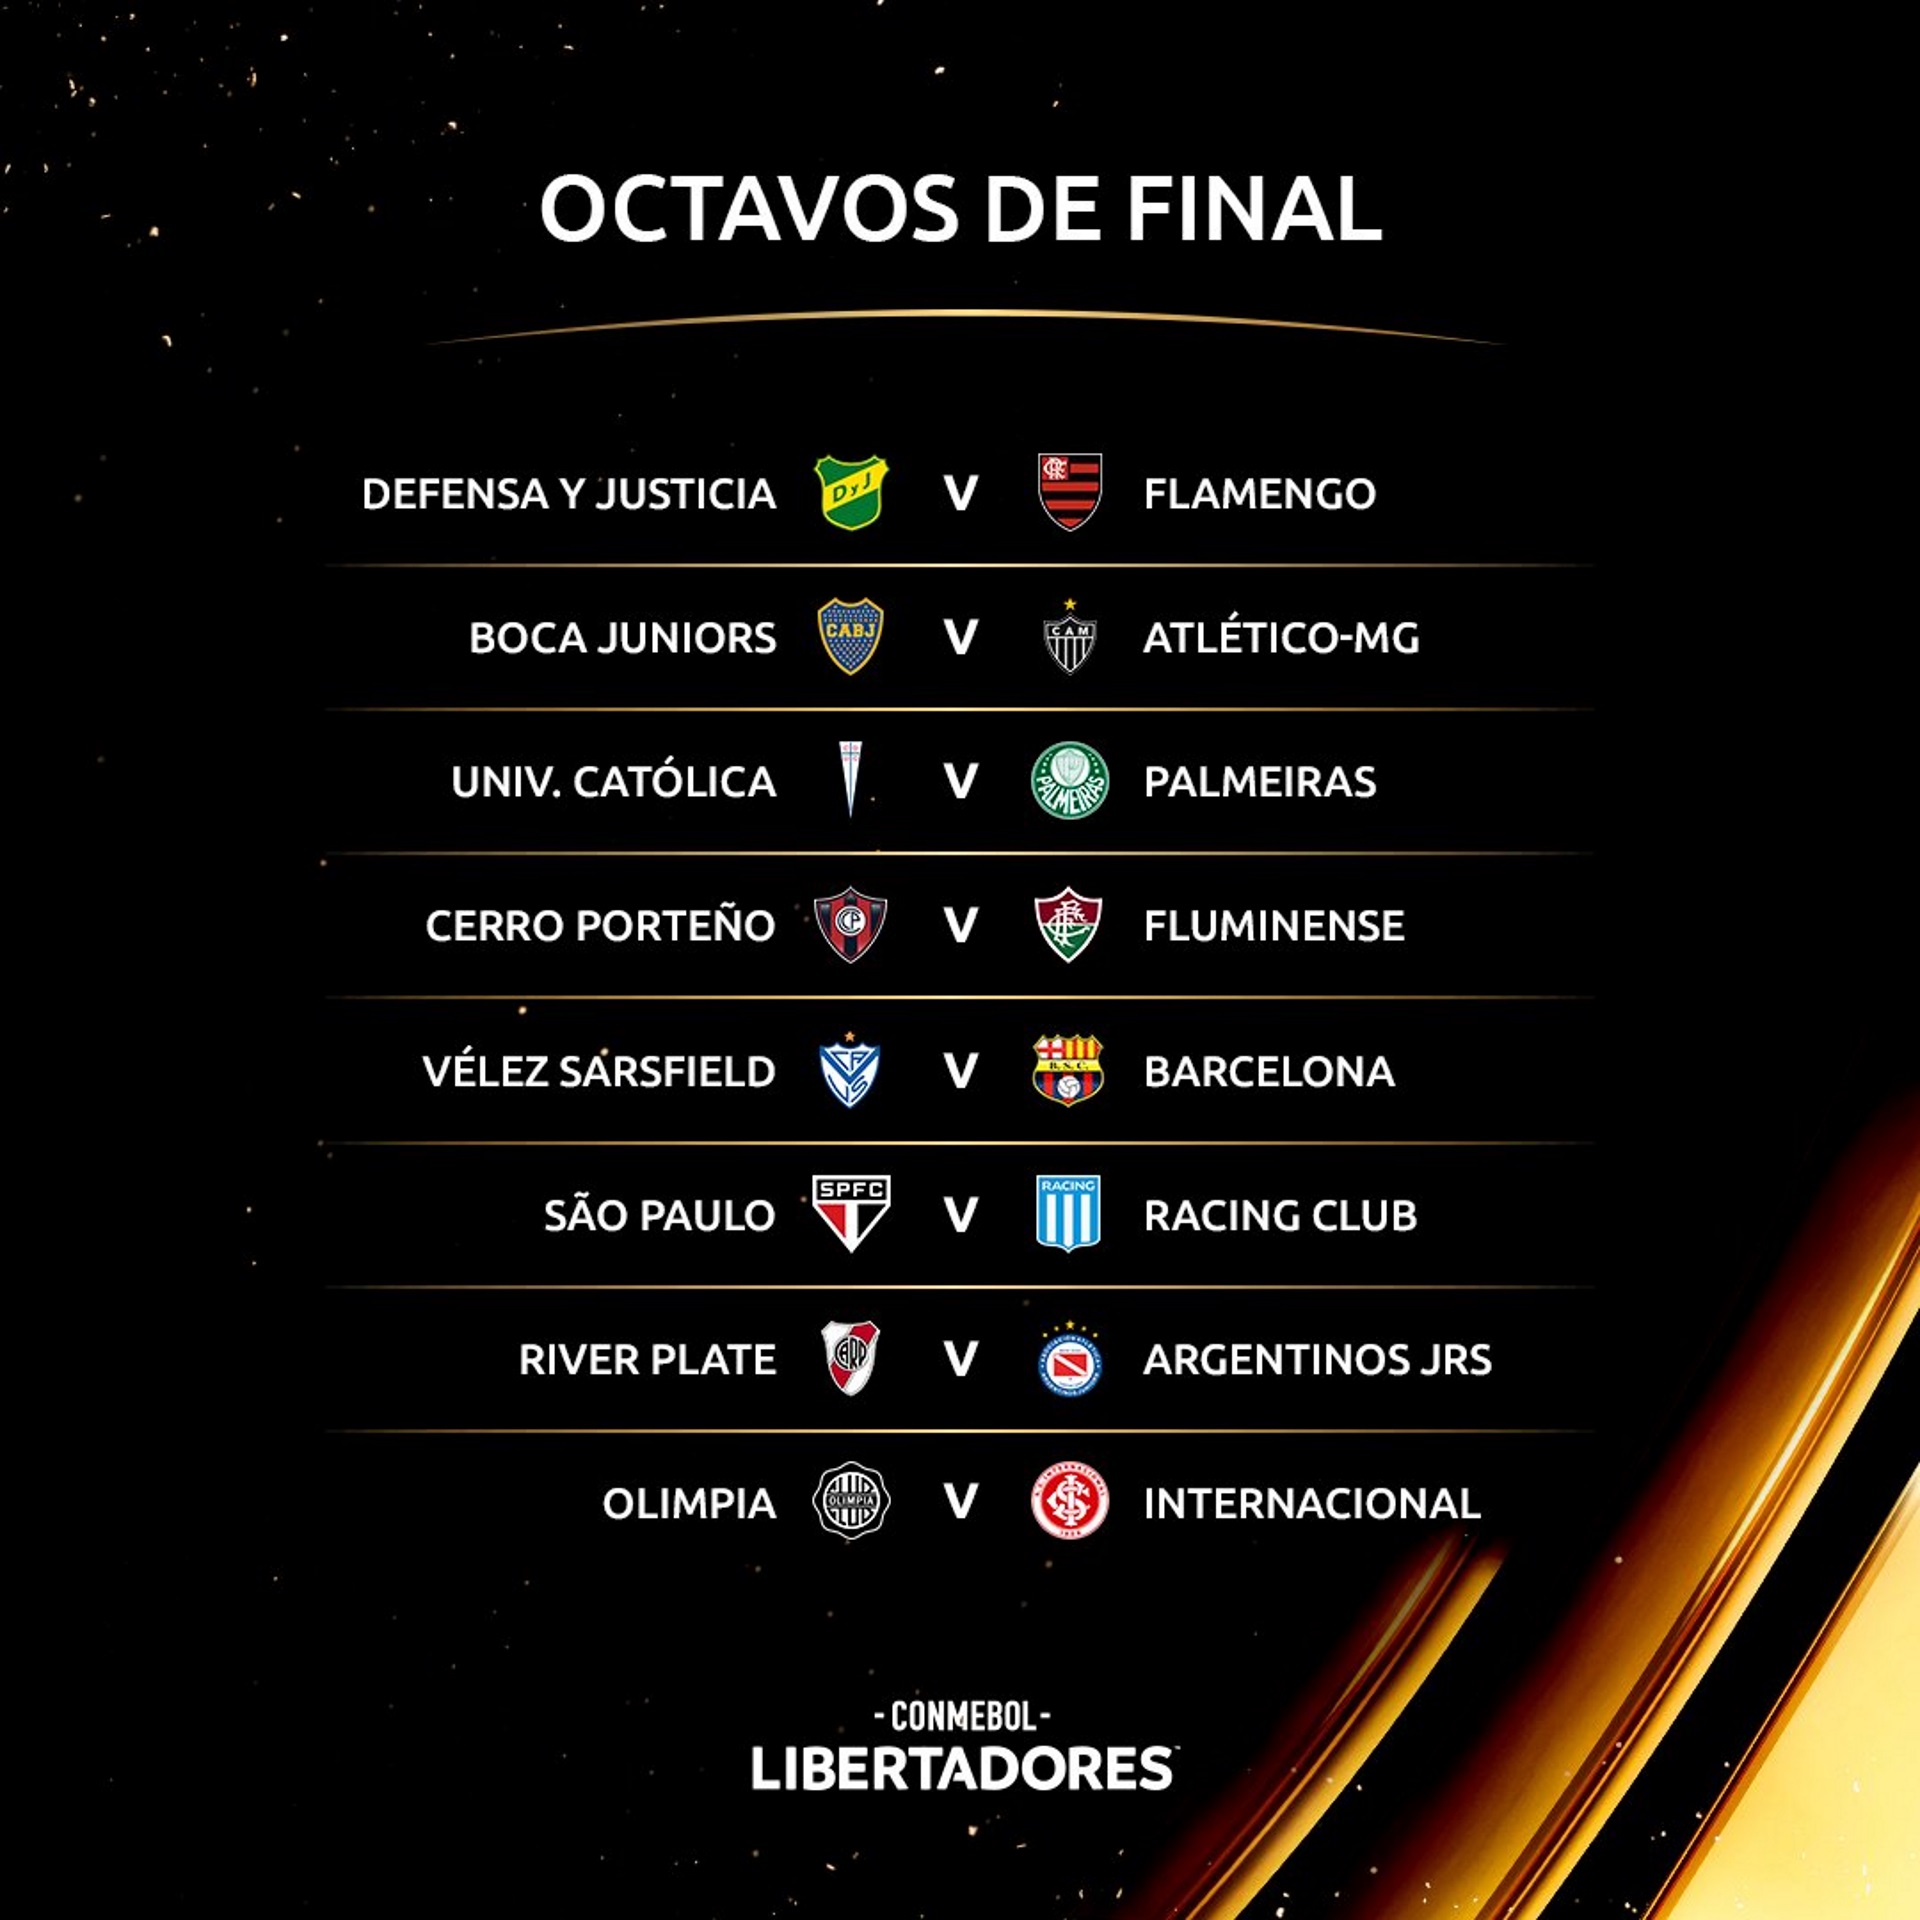 Los duelos de octavos de final de la Libertadores 2021